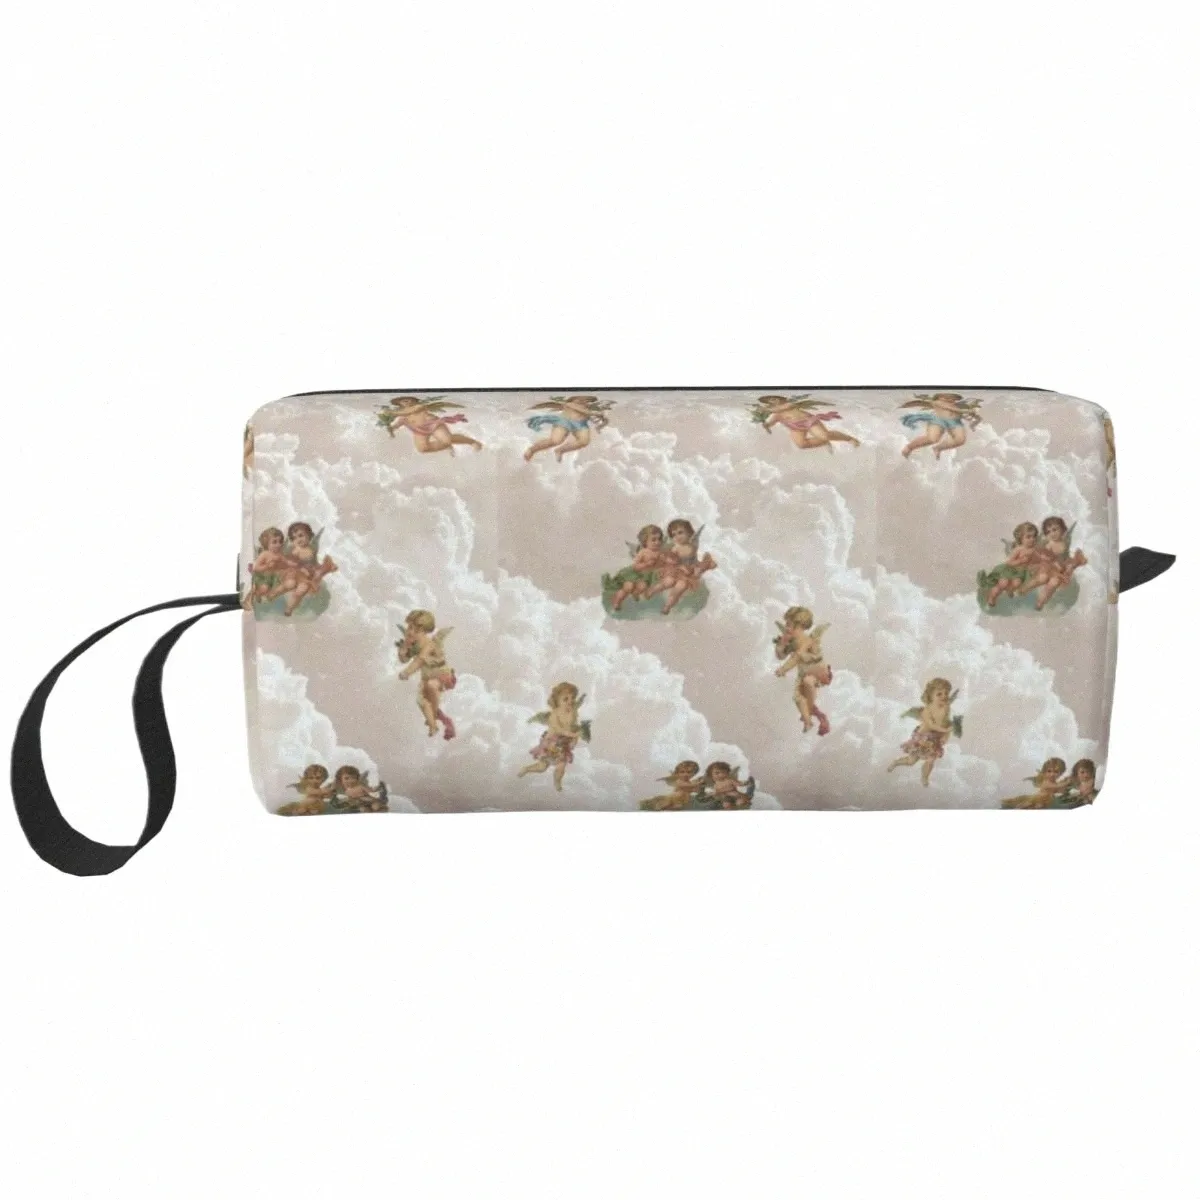 ルネッサンス美学エンジェルパターン女性のための旅行化粧品バッグ